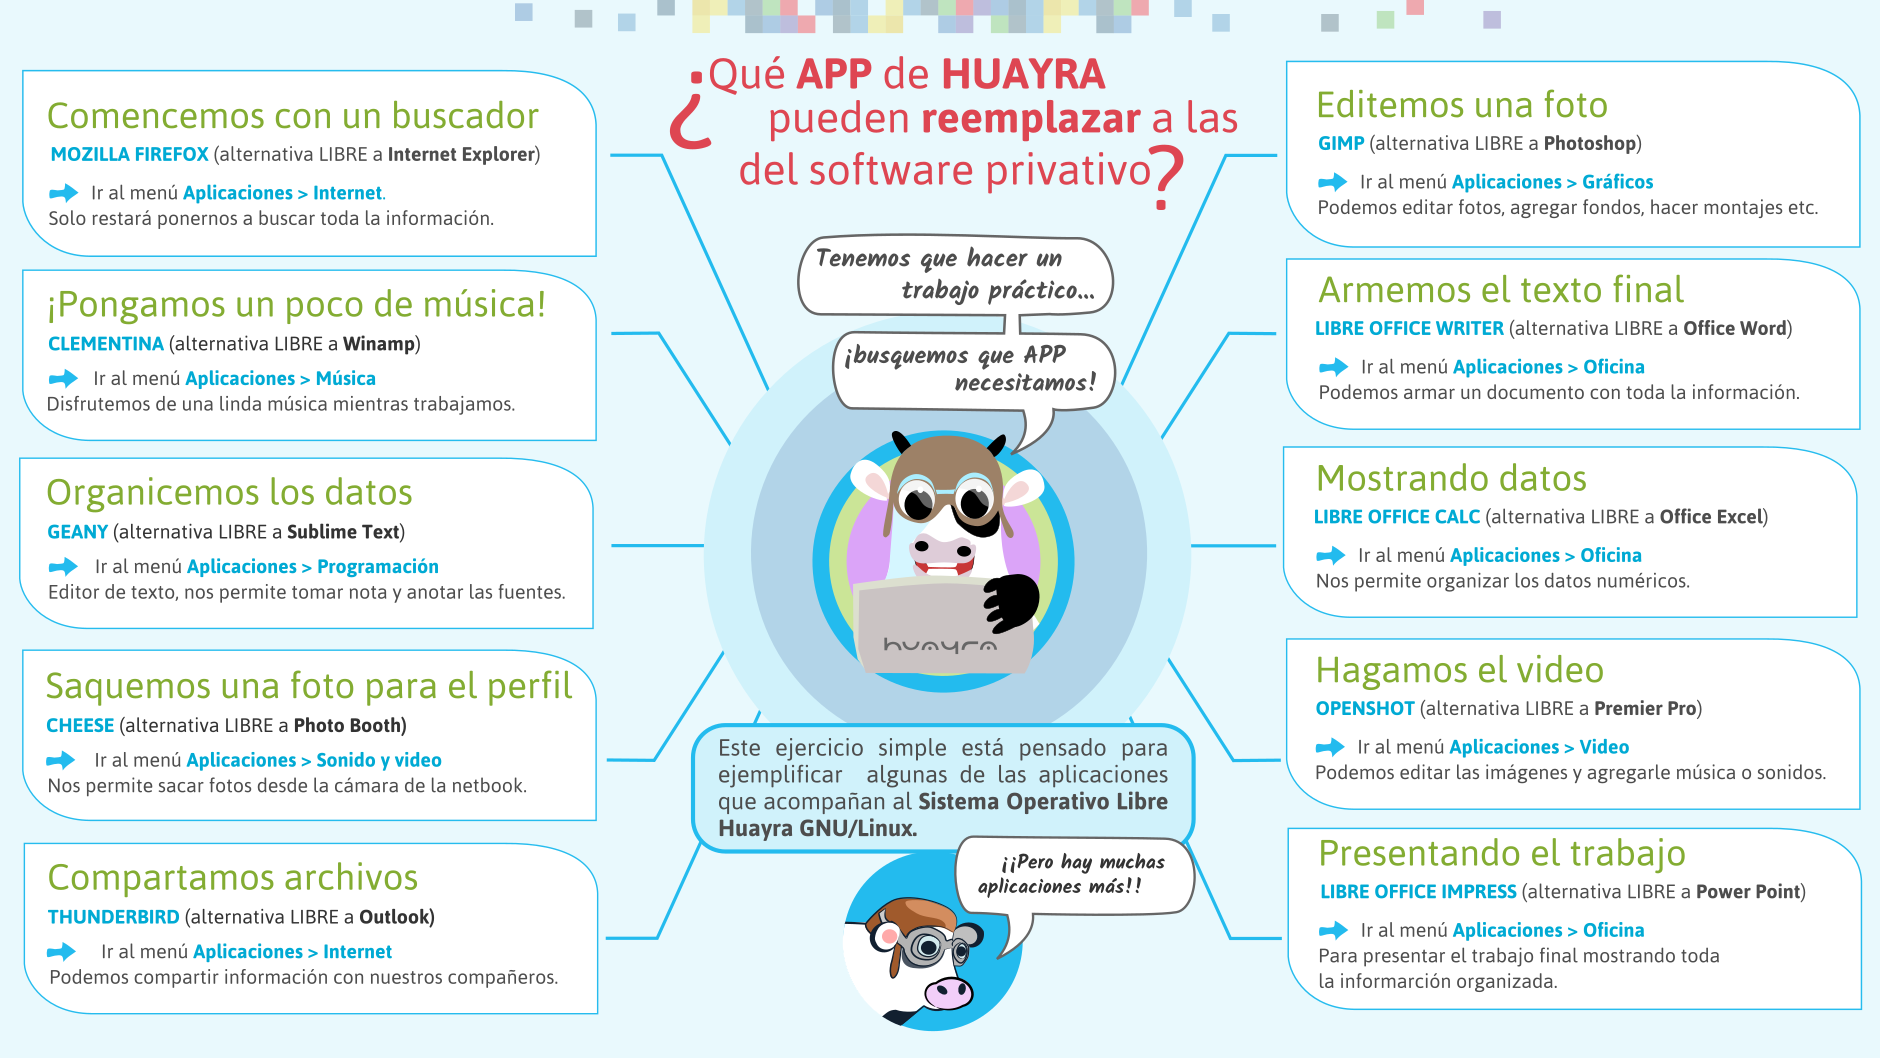 Qué aplicaciones de Huayra pueden reemplazar a las del software privativo?  